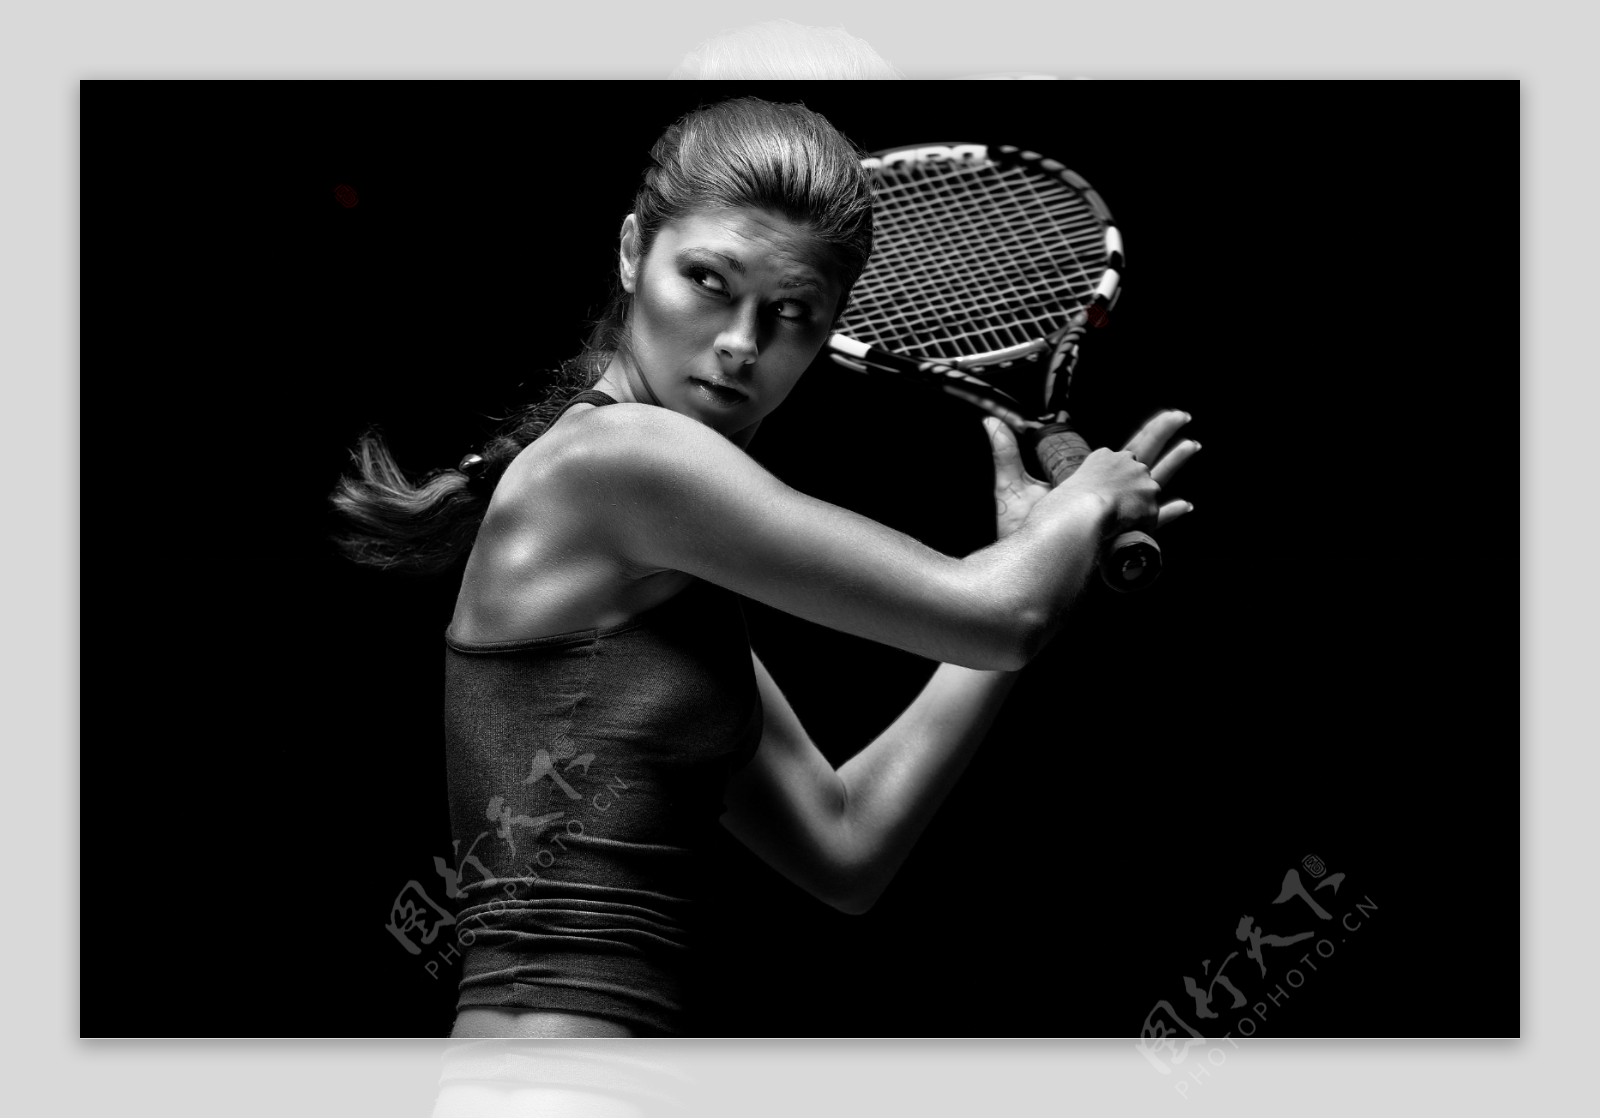 打网球的女人图片